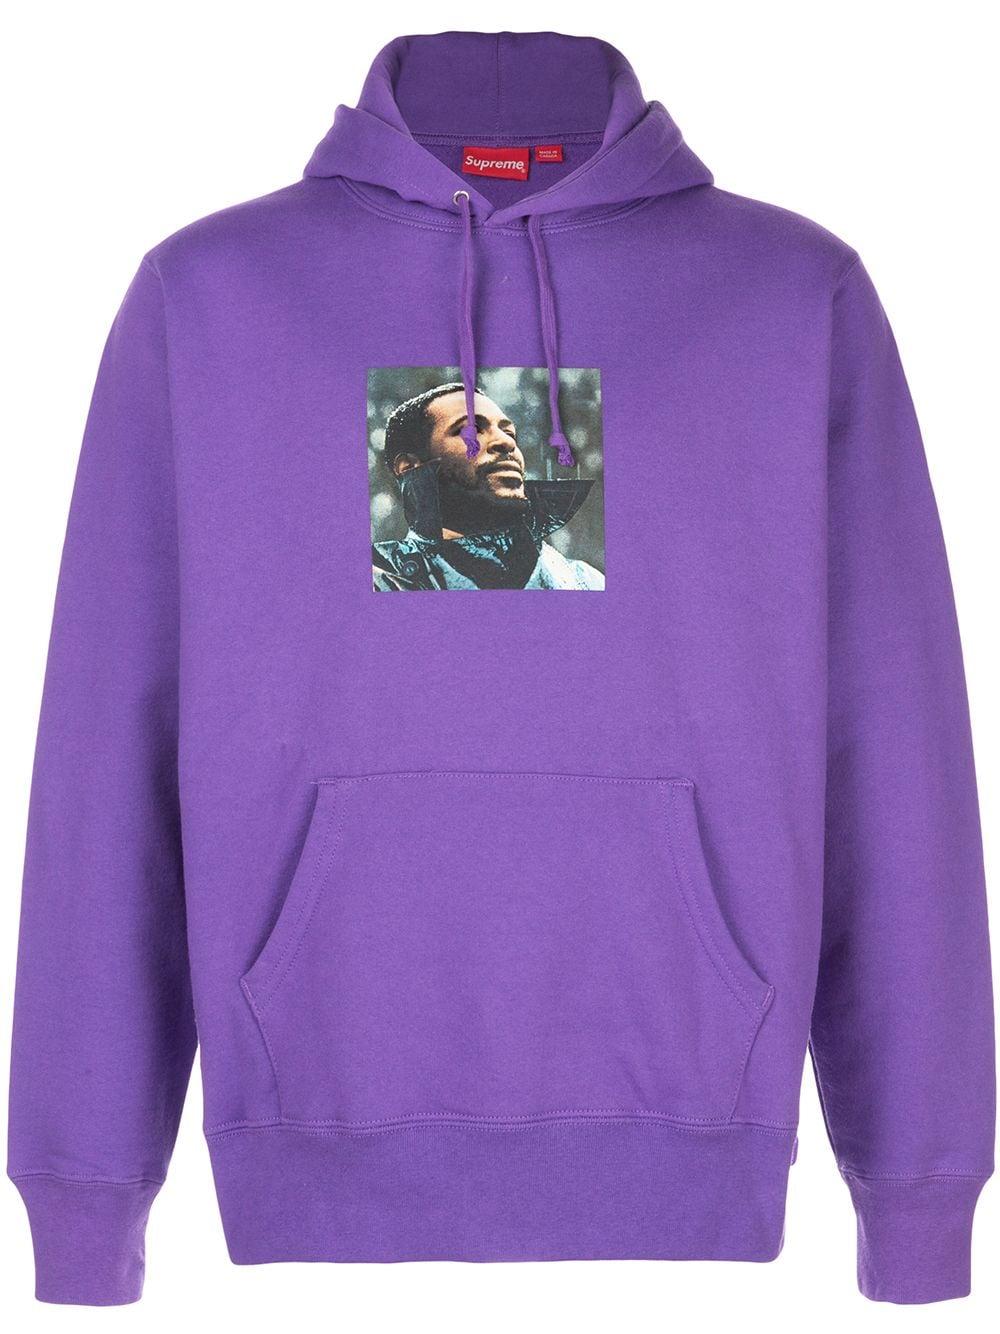 Supreme Marvin Gaye Hooded Sweatshirt in Purple for Men - Lyst